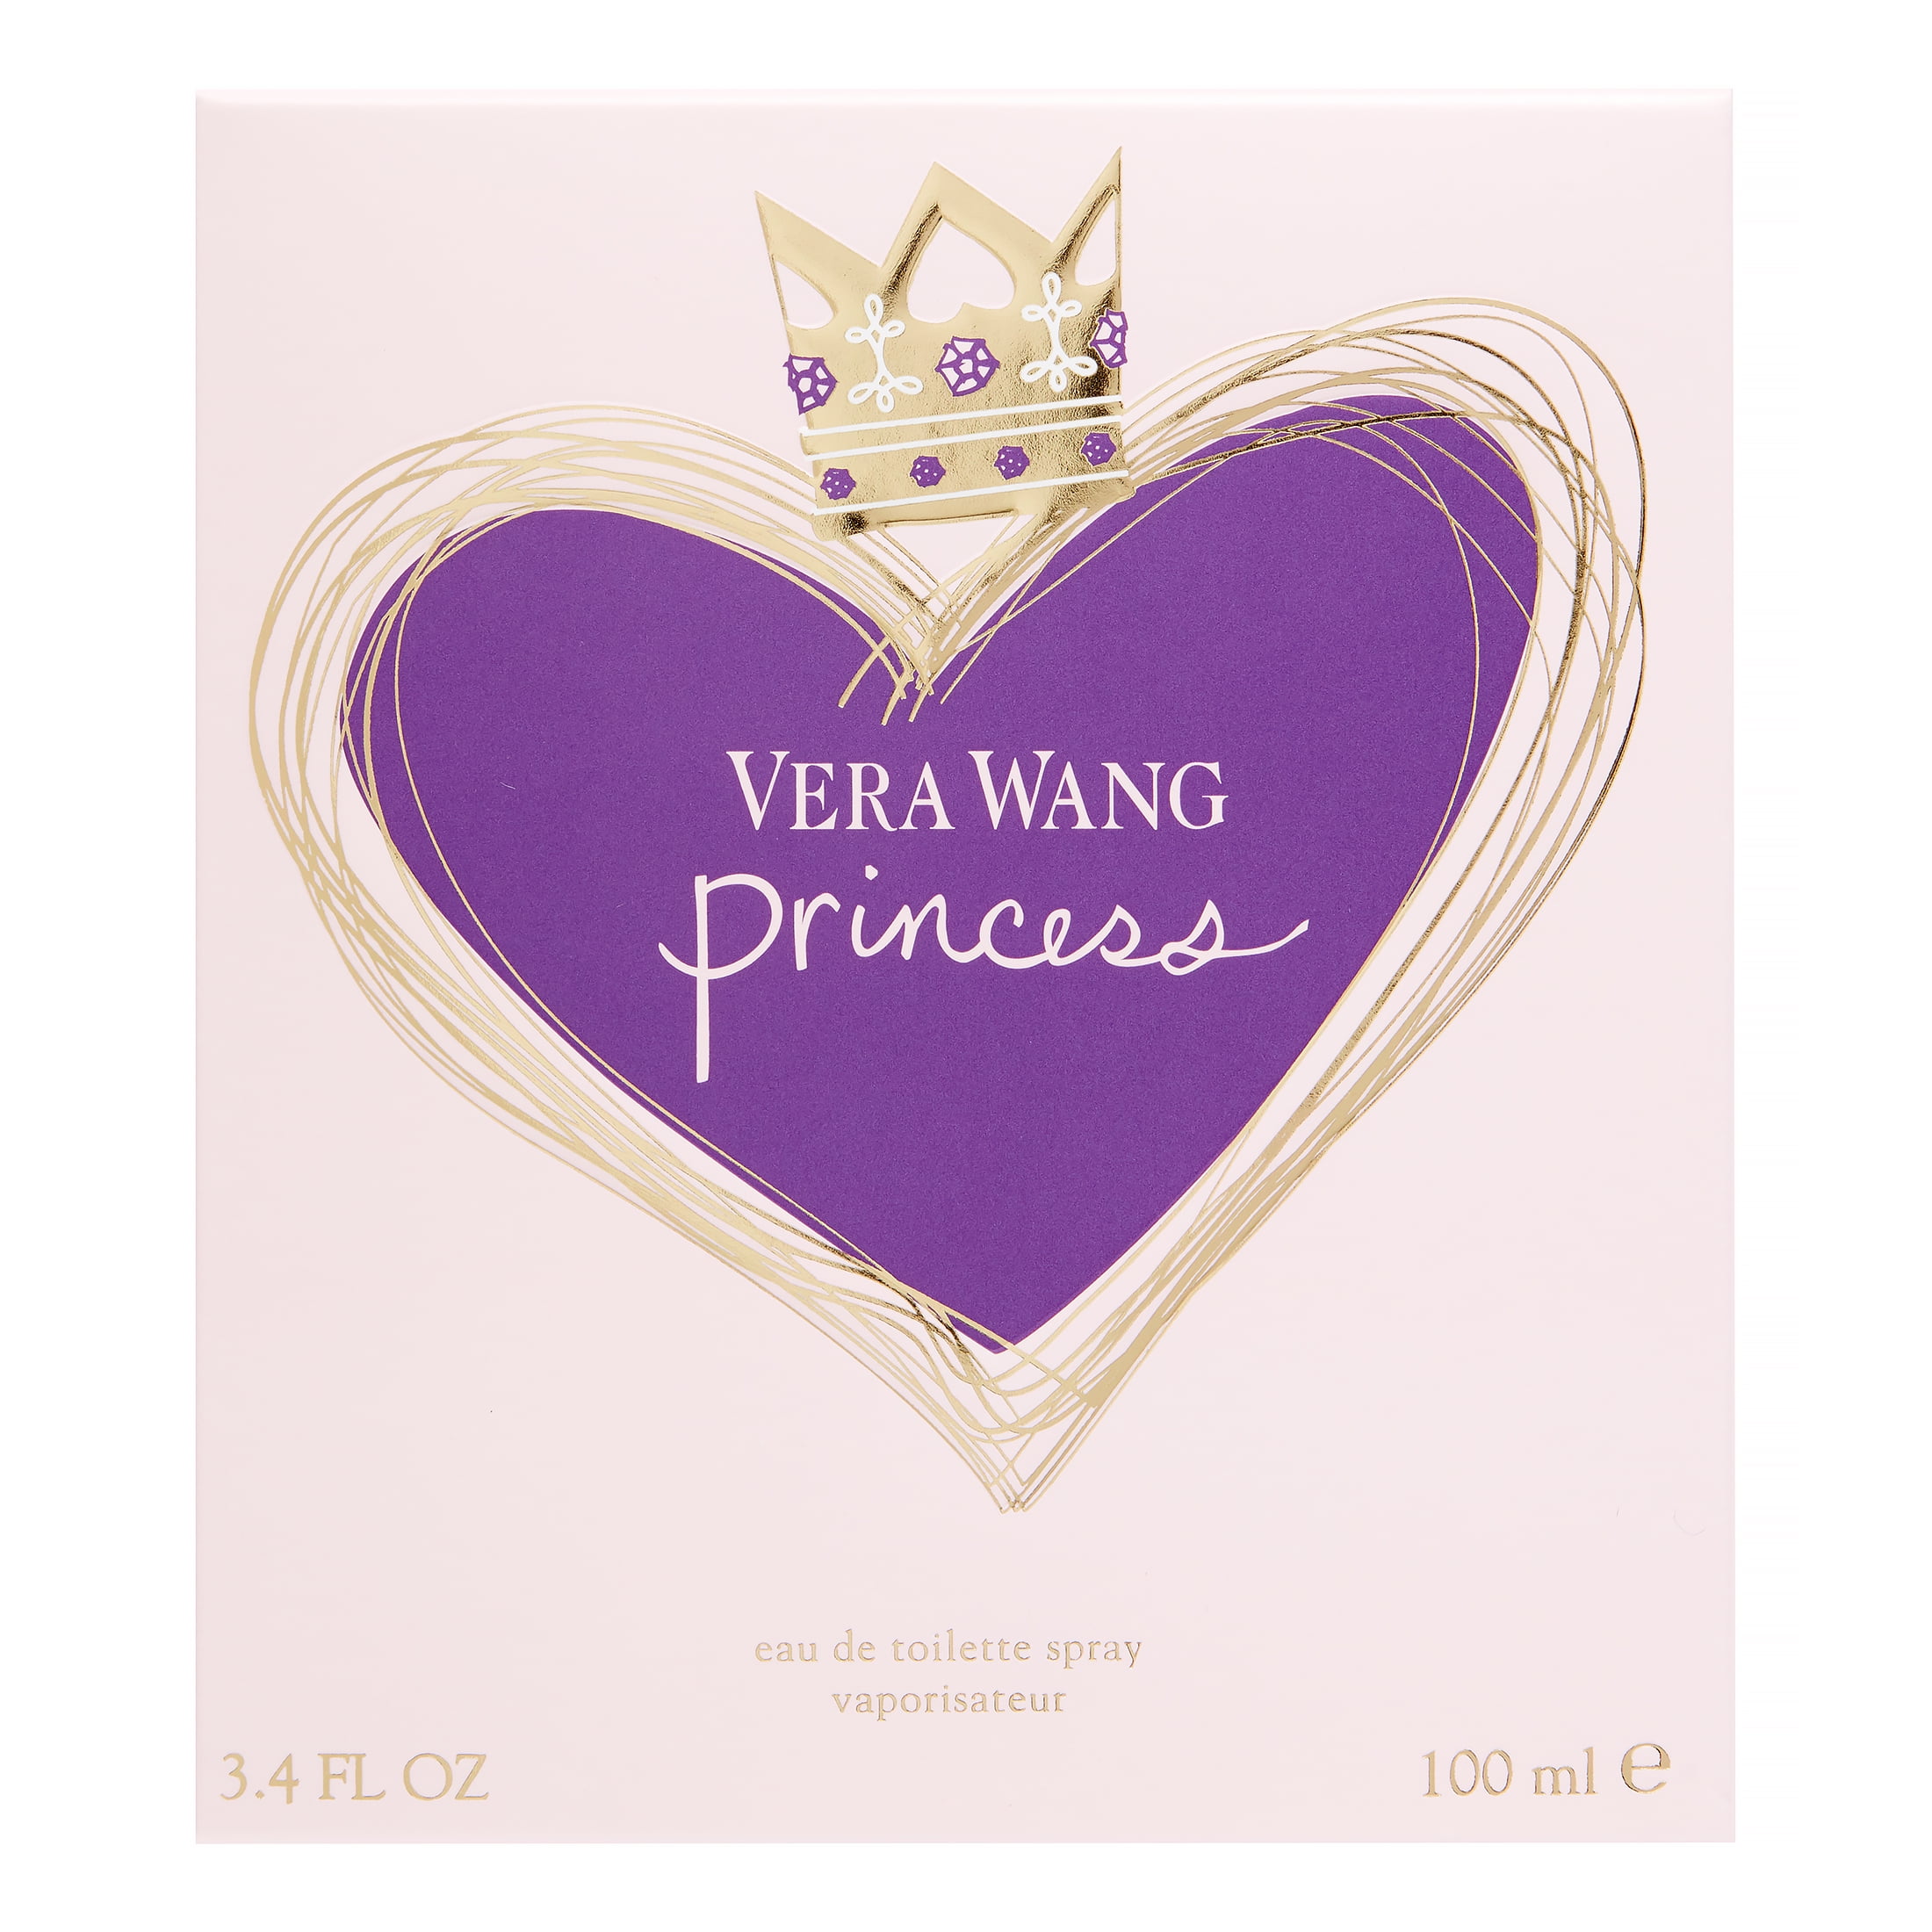 Discover the Enchanting Vera Wang Princess Perfume Collection